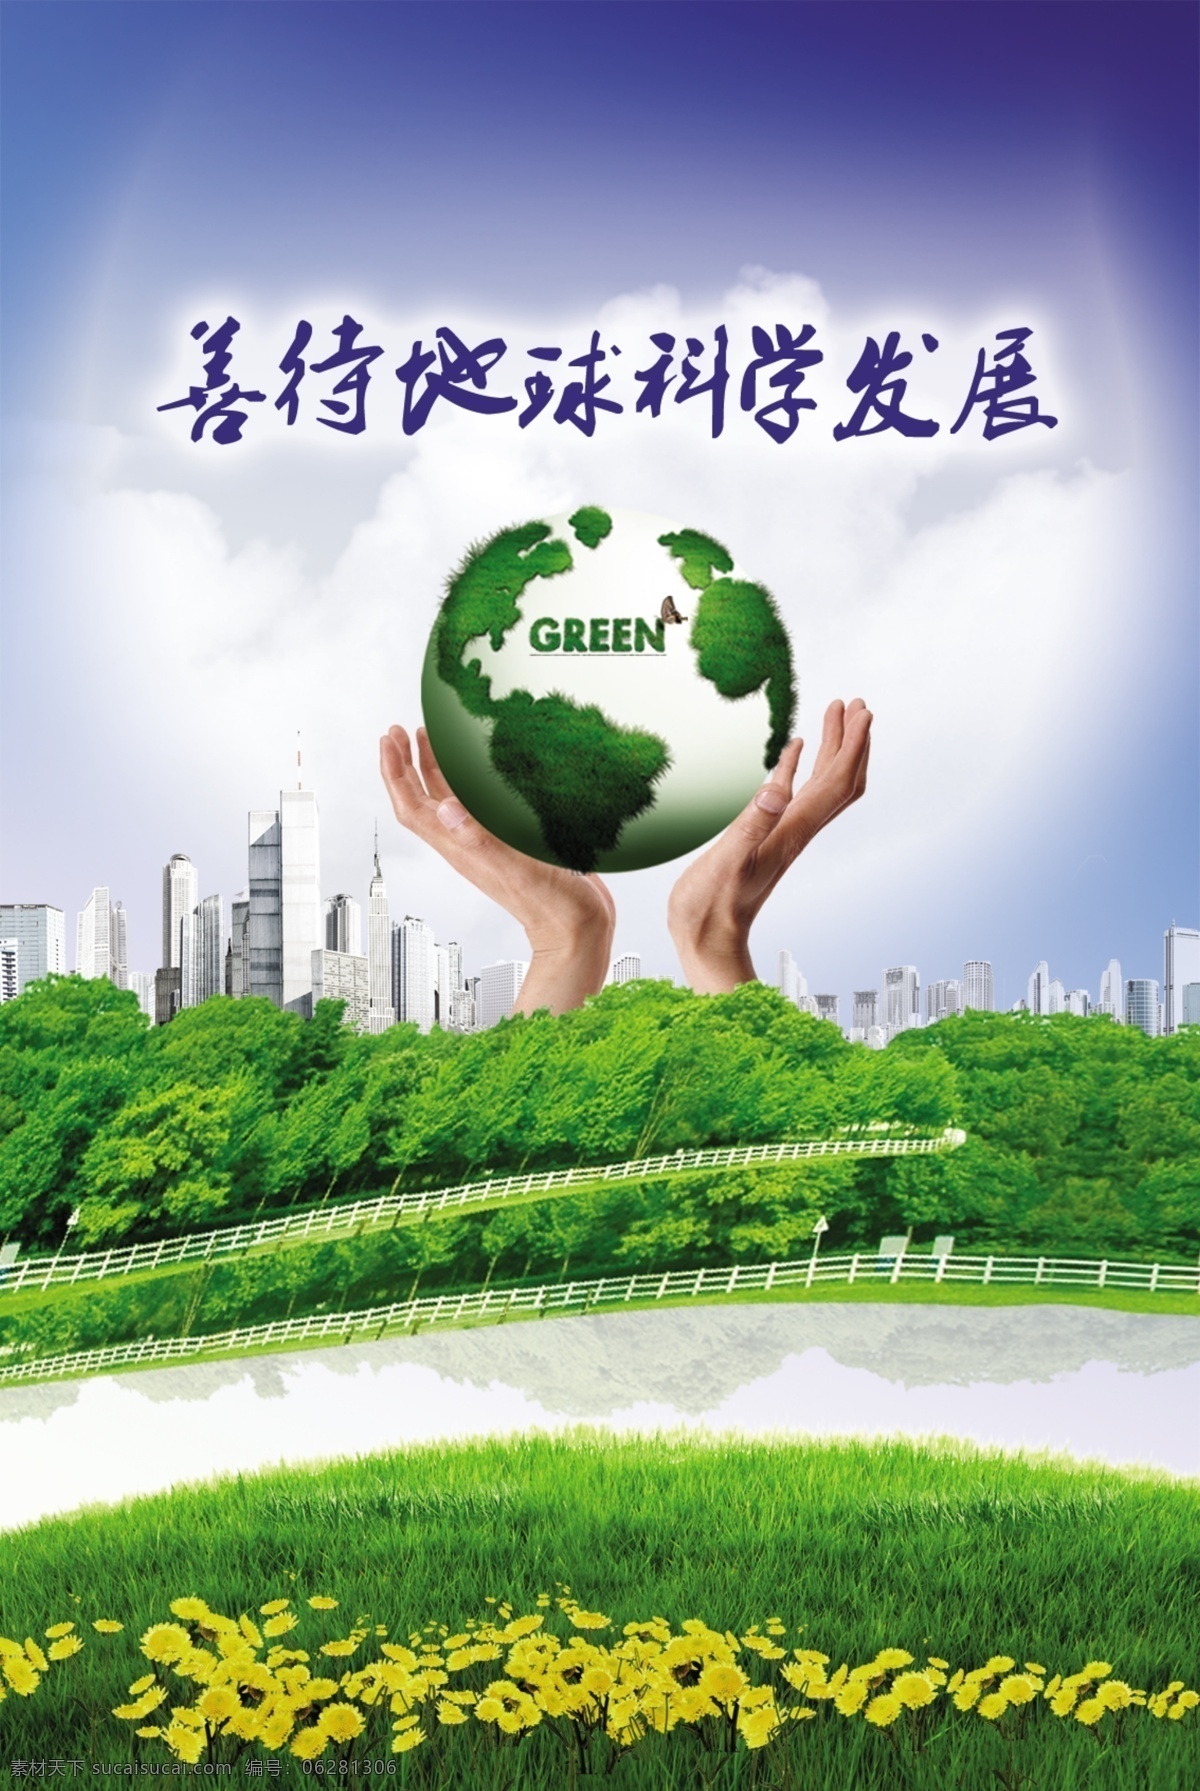 善待地球海报 地球 手 花 绿地 城市 低碳生活 科学发展 海报 其他模版 广告设计模板 源文件